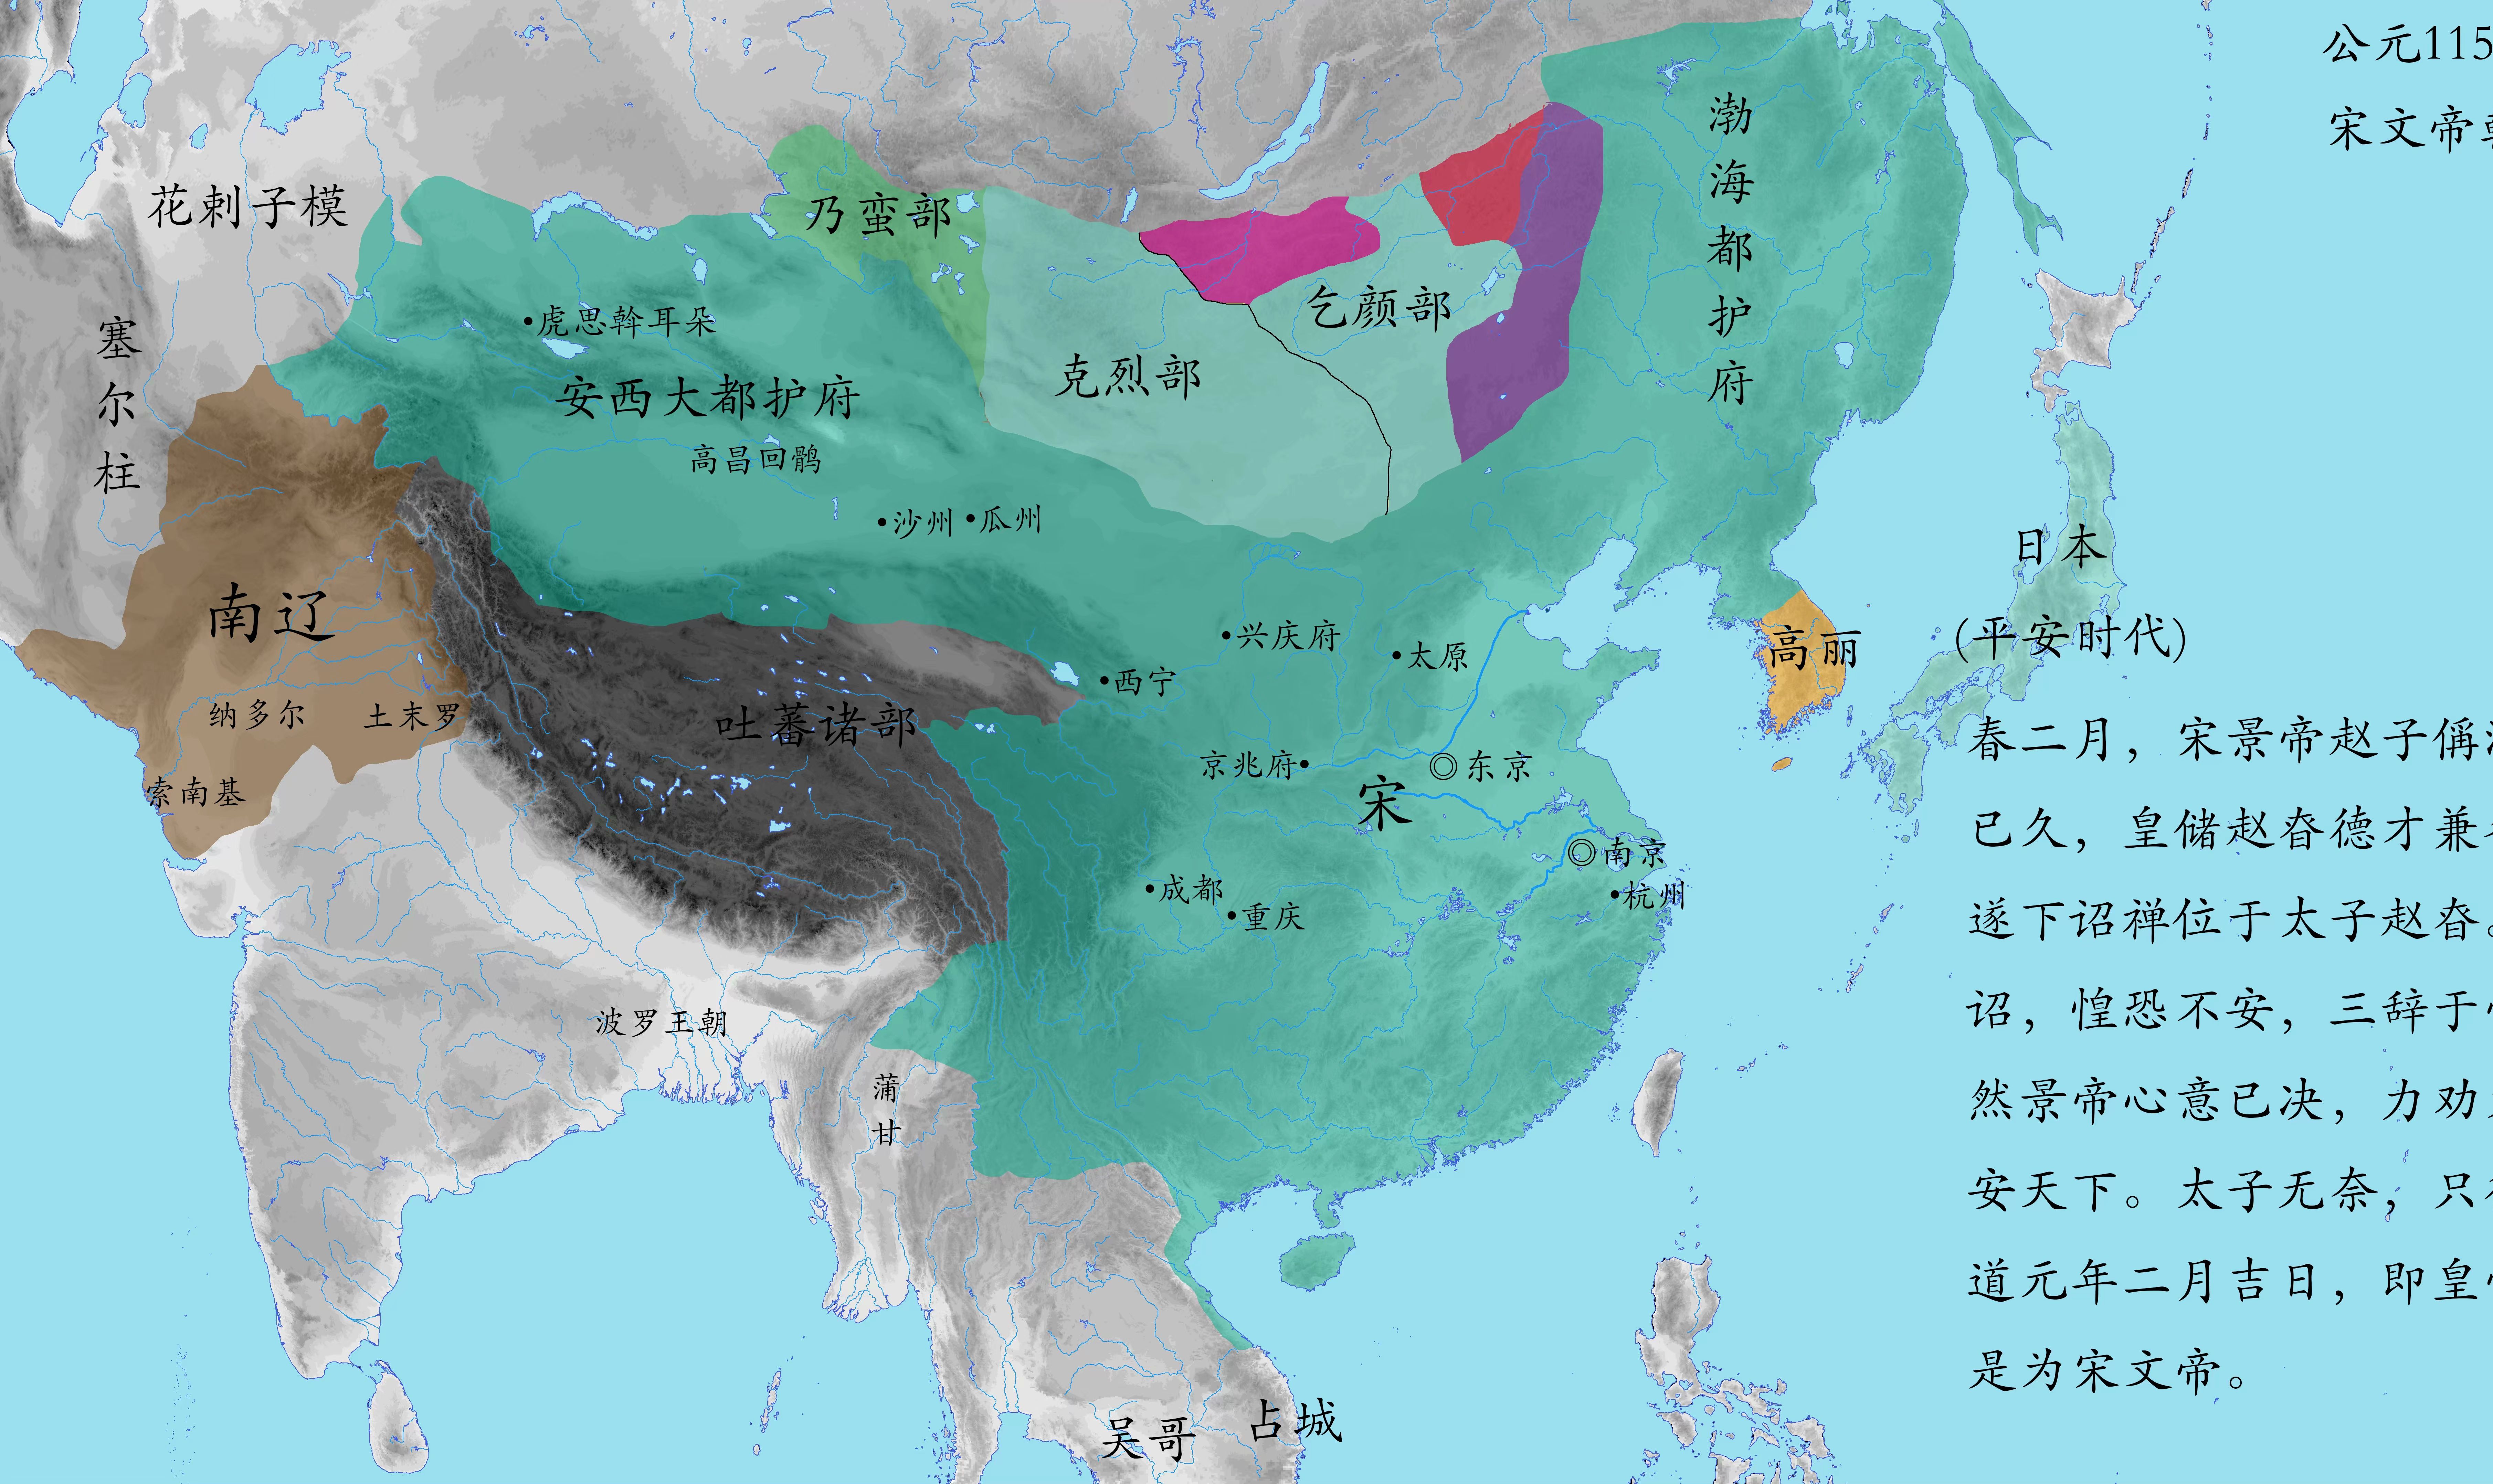 【中国历史架空】宋收复西域和蒙古